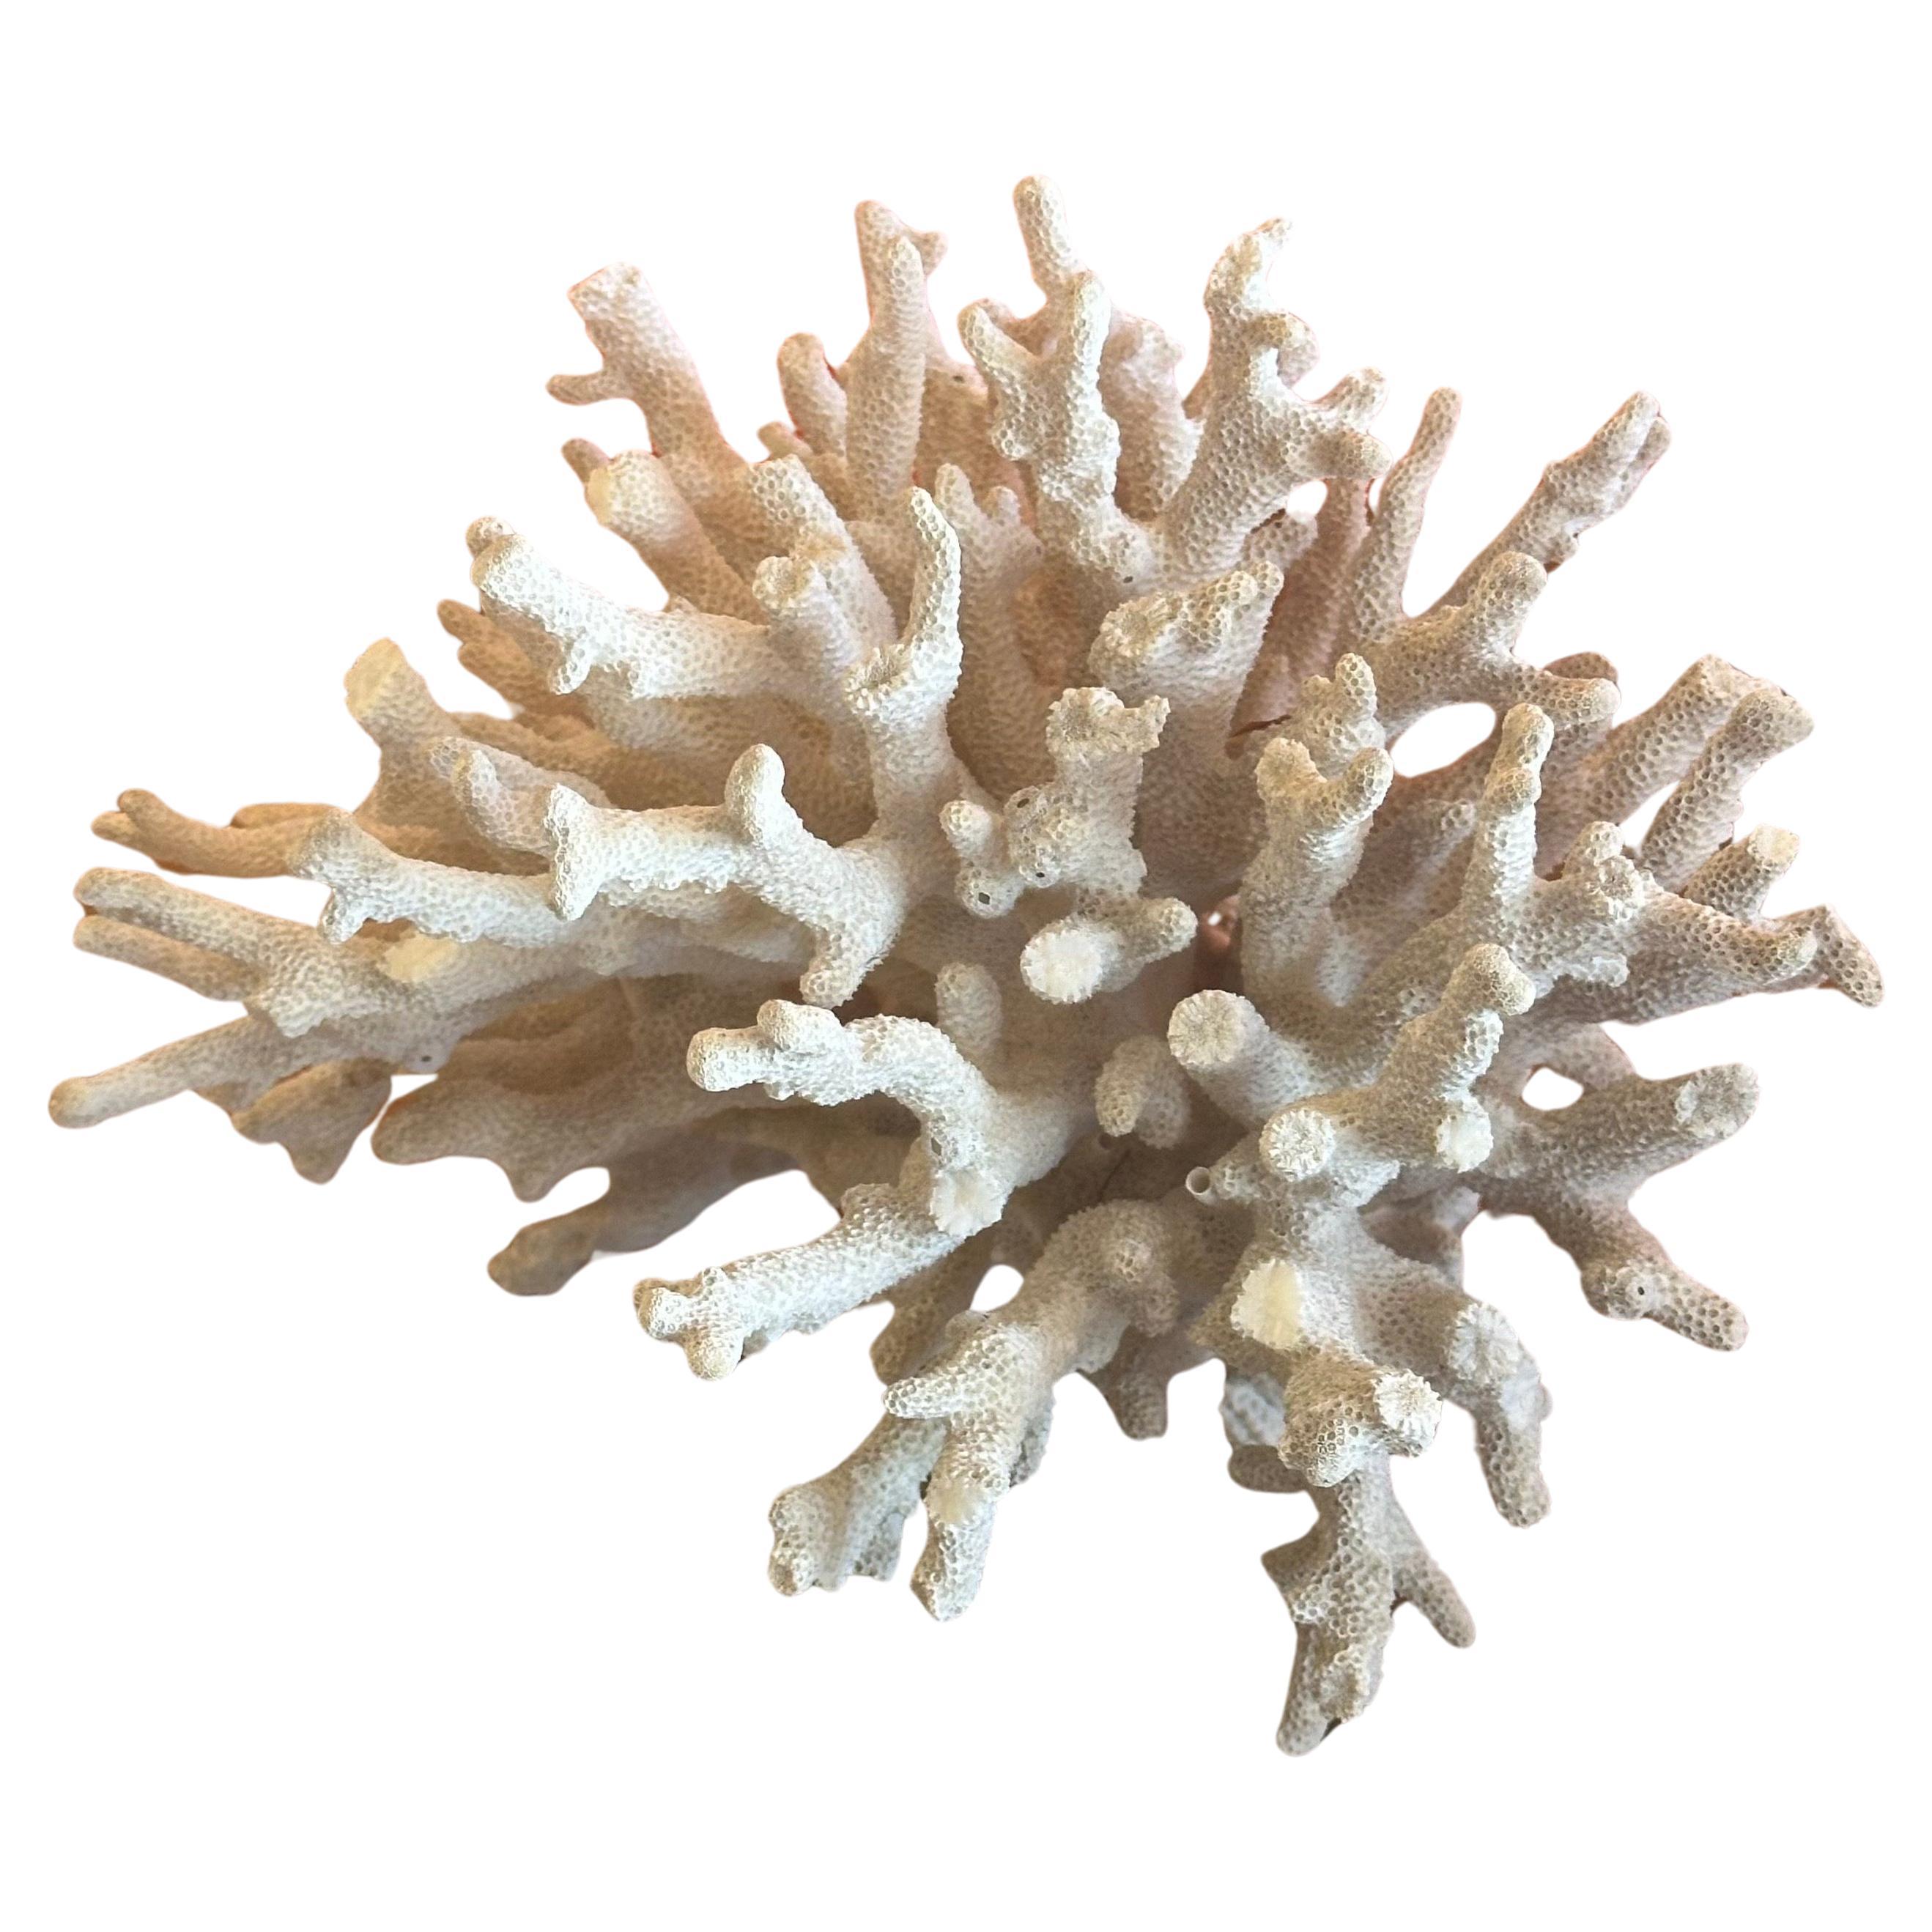 Hollywood Regency Large Natural White Sea Coral Specimen For Sale